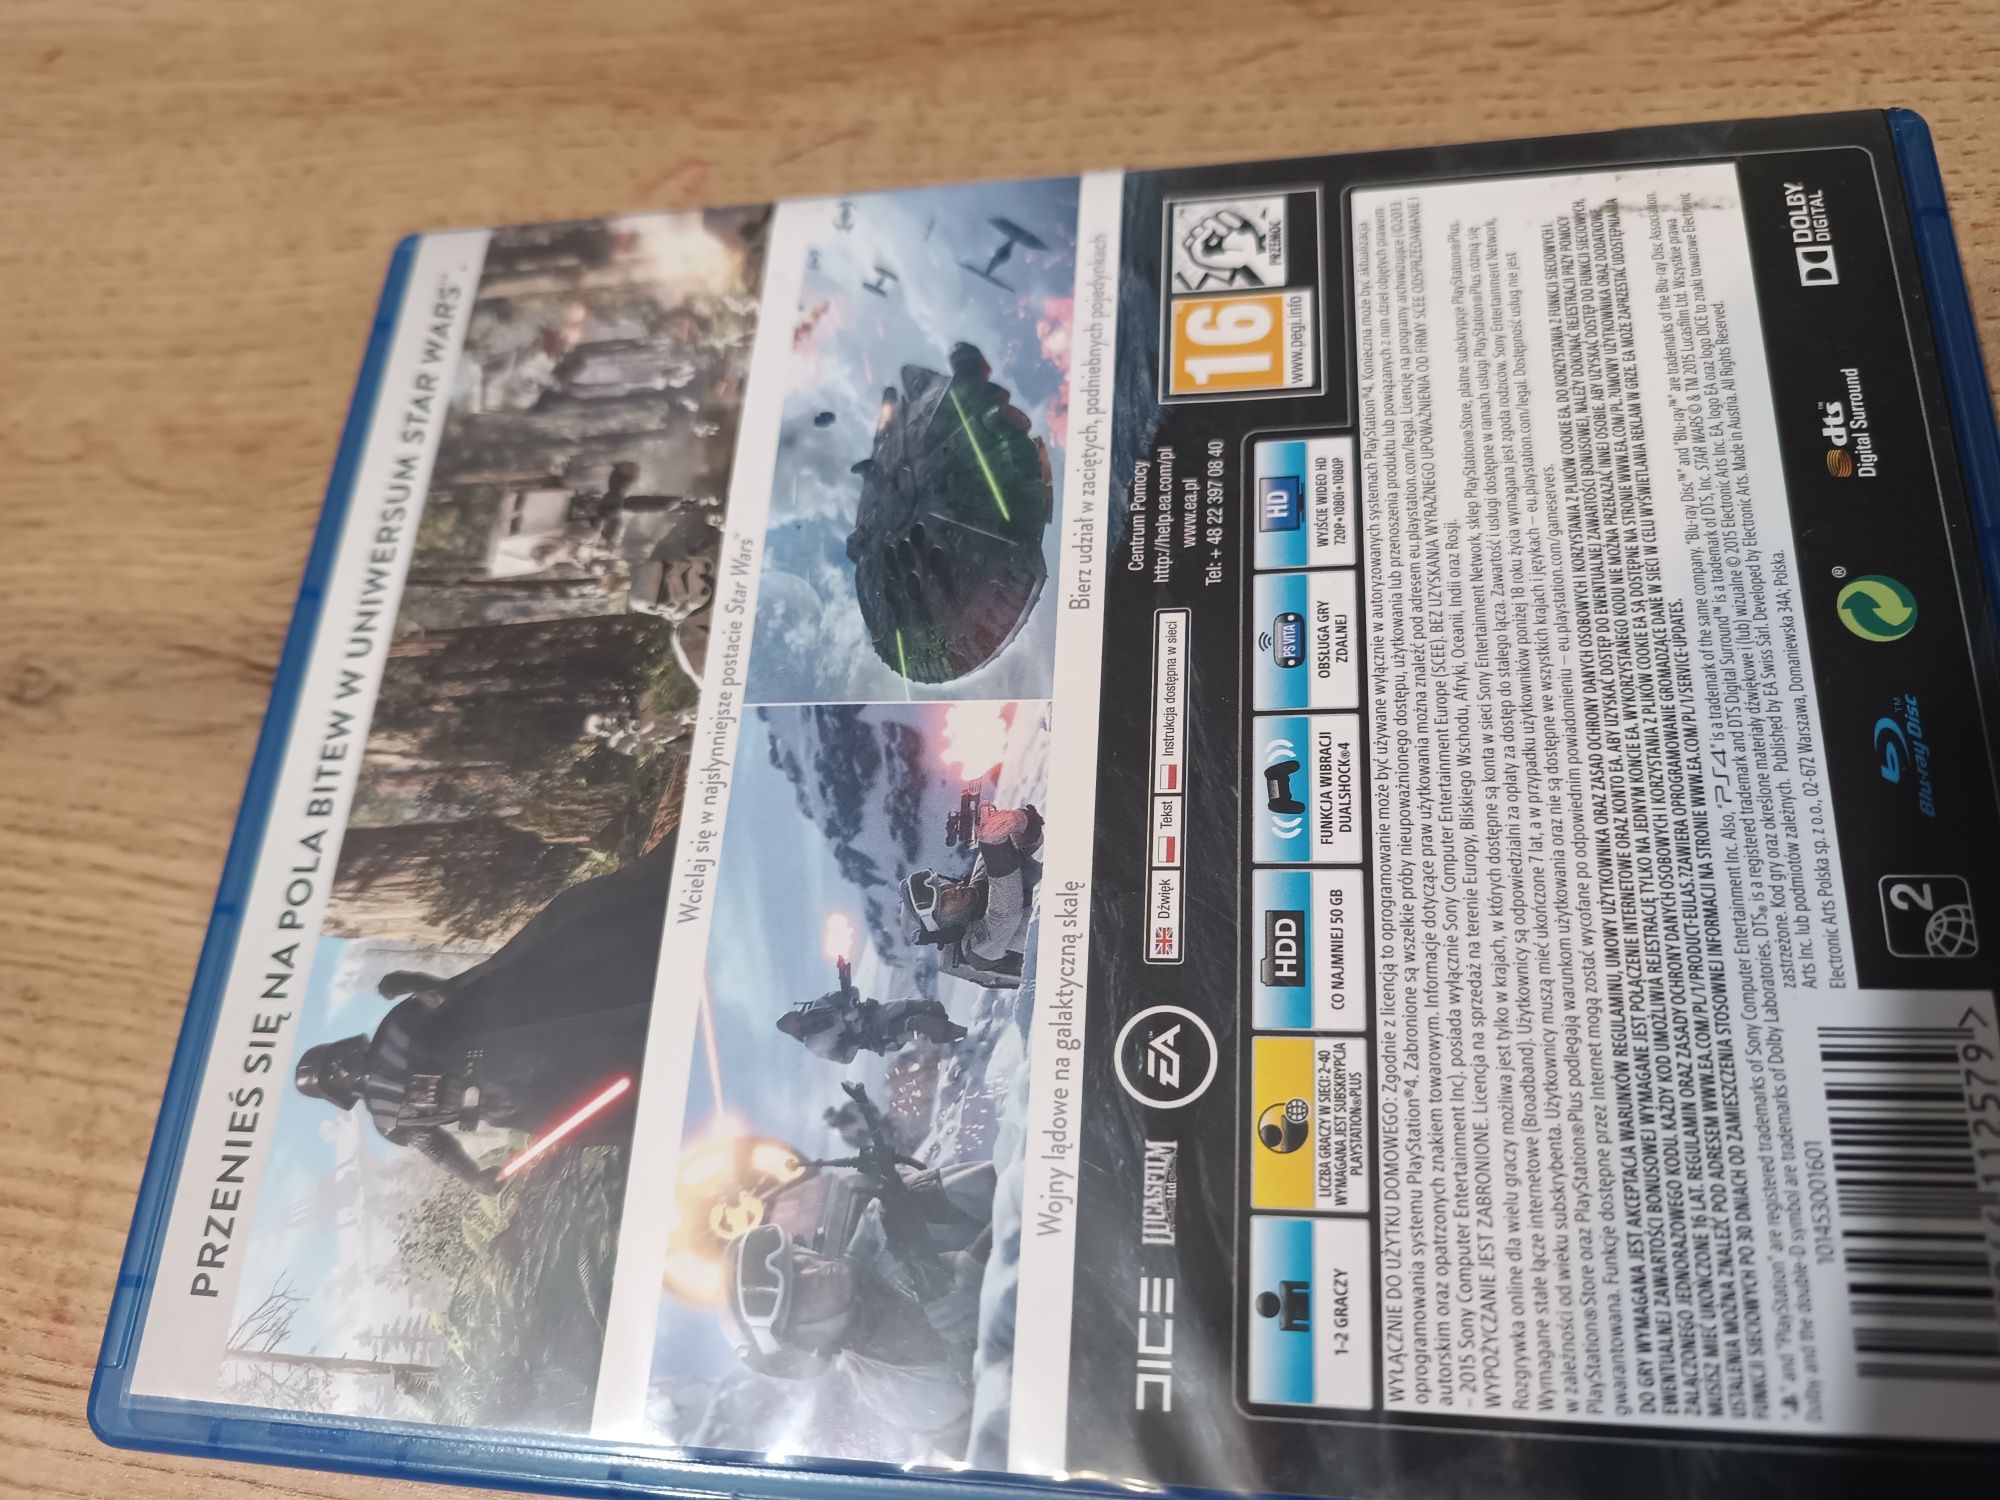 Star wars battlefront PS 4